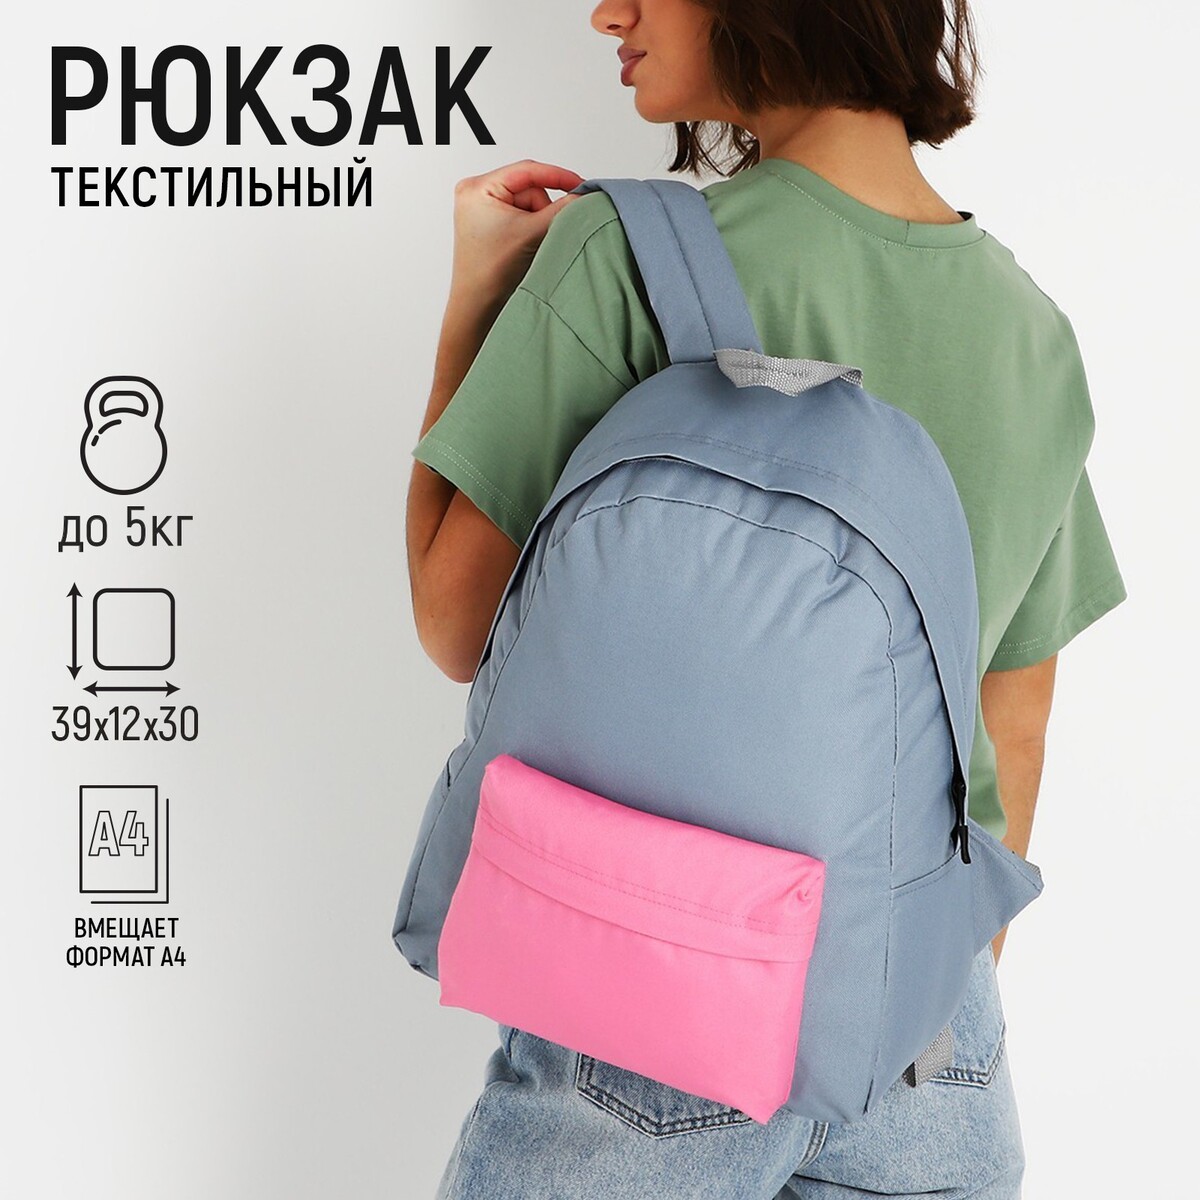 Рюкзак текстильный с цветным карманом, 30х39х12 см, серый/розовый рюкзак текстильный мамс better days 38х27х13 см